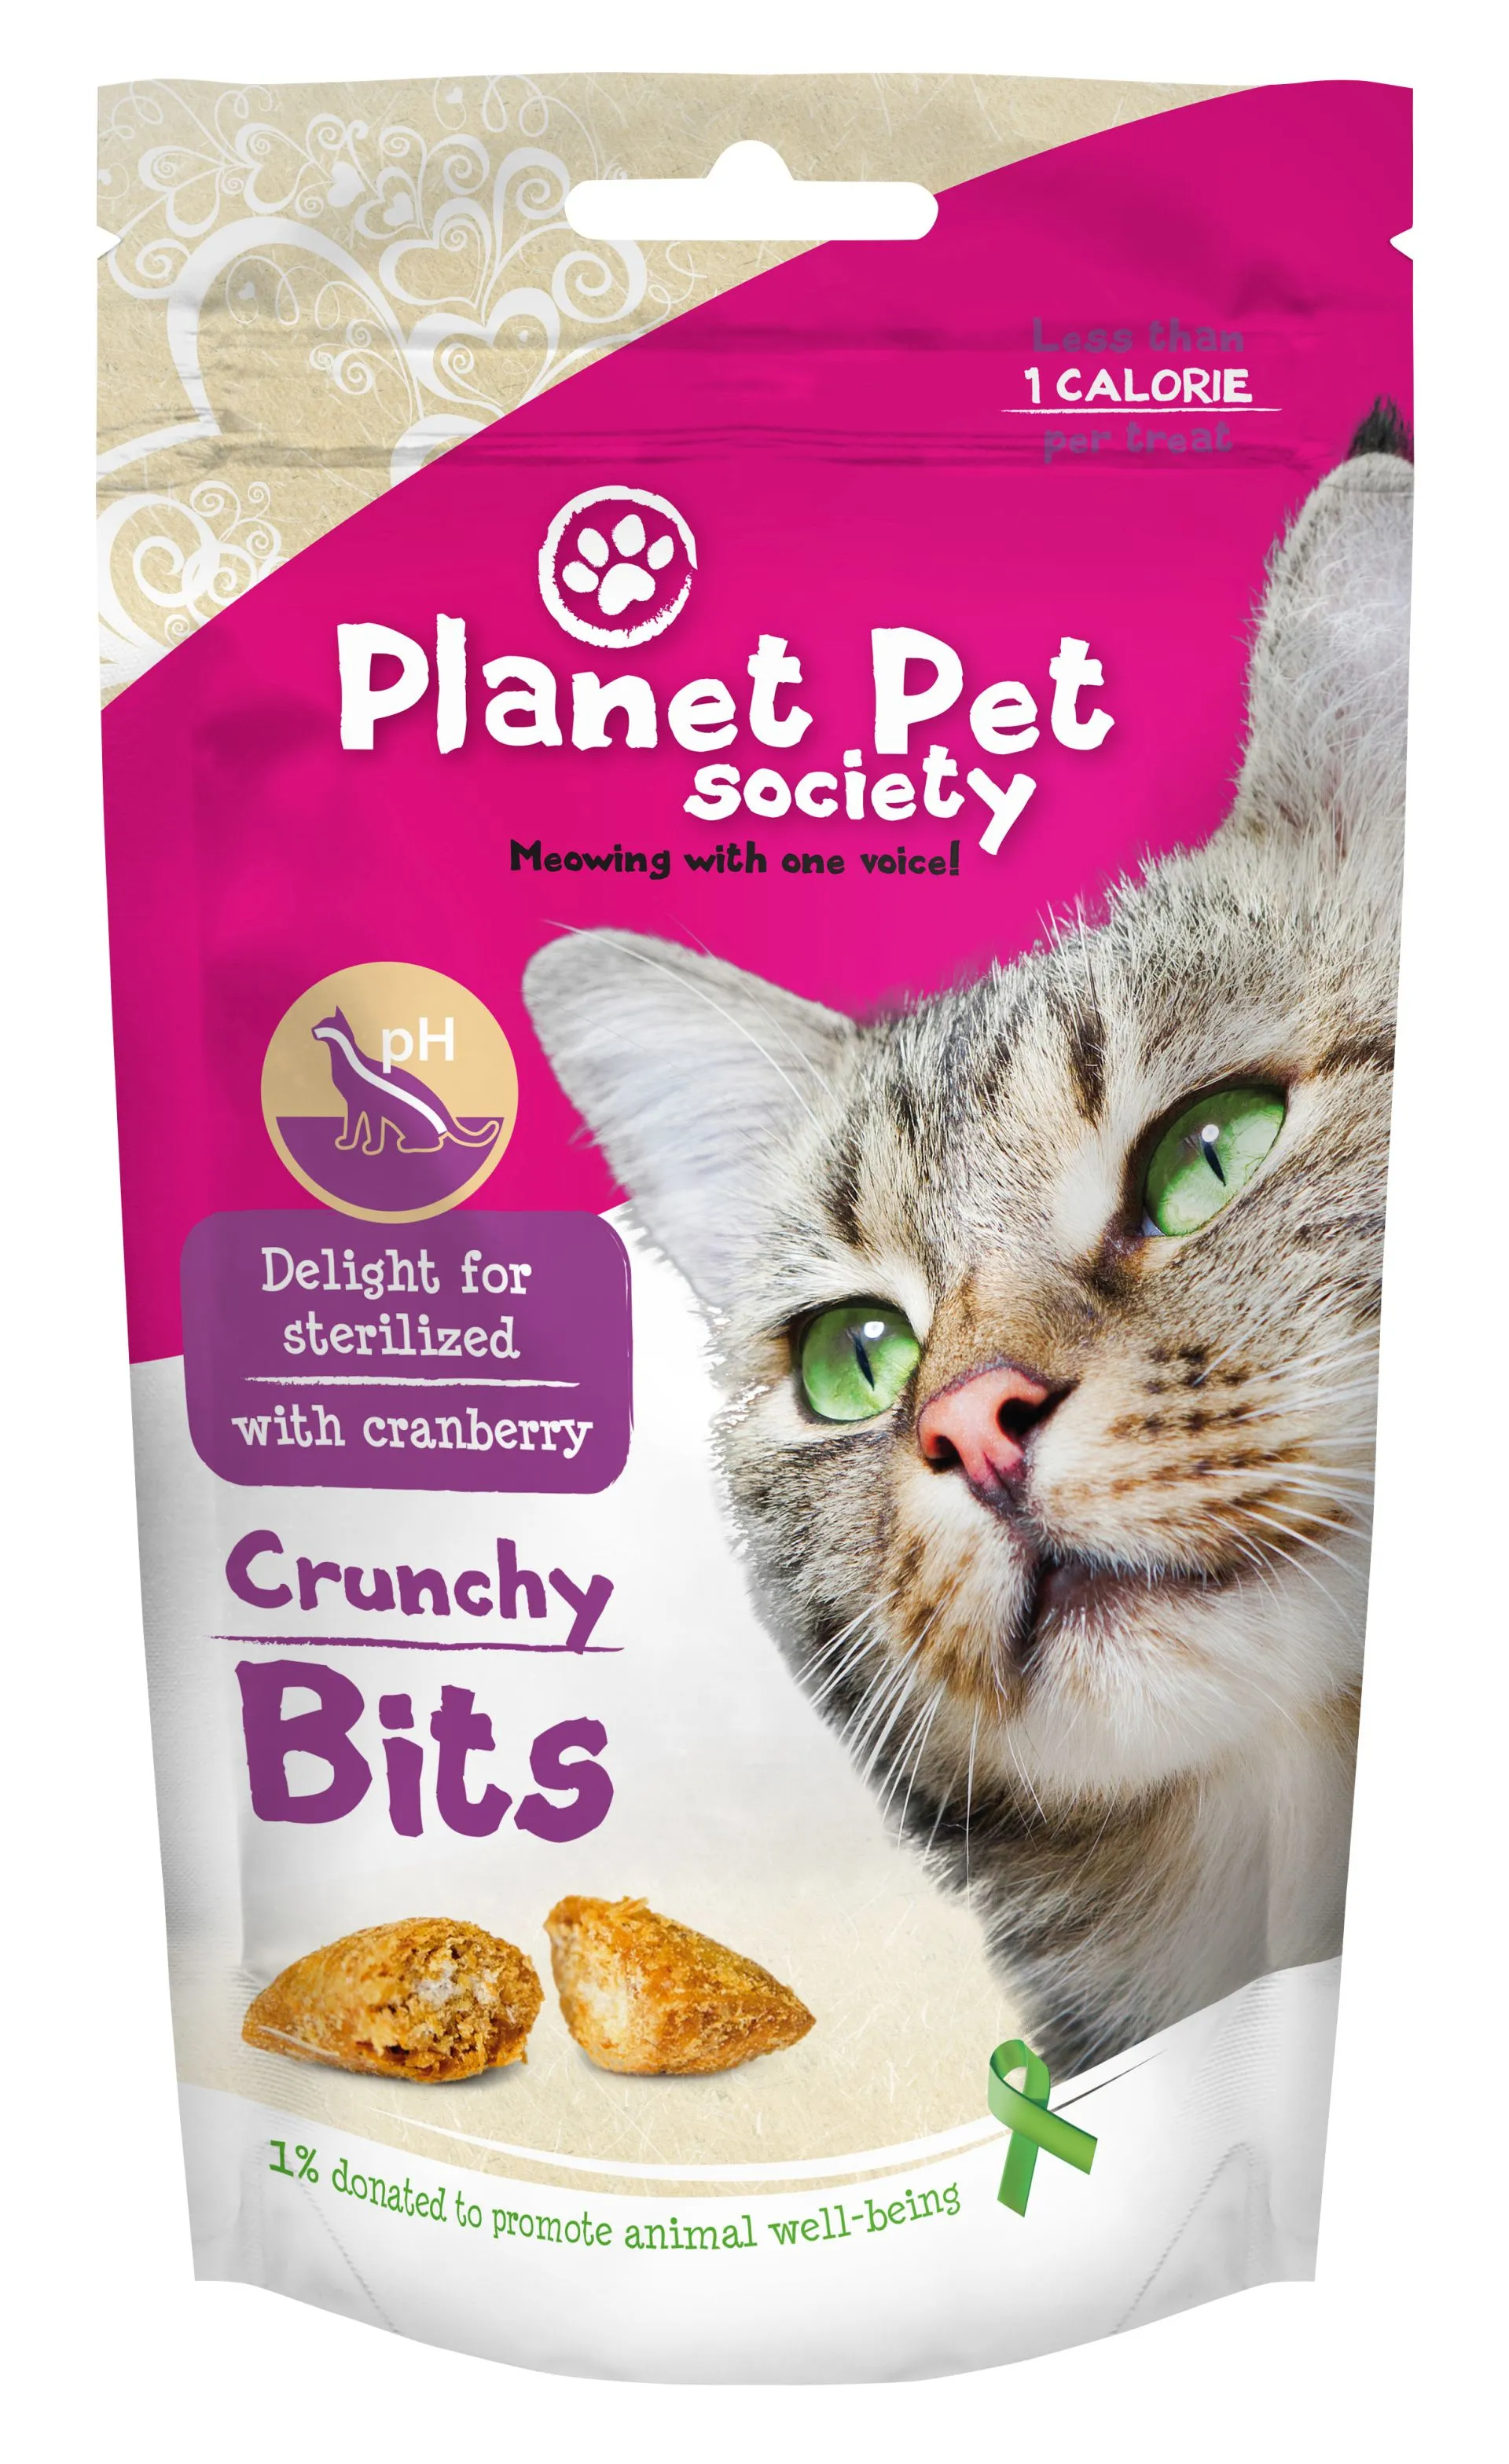 Planet Pet Society Crunchy Bits for Sterilized Cats - деликатесно лакомство за кастрирани котки - 40гр.